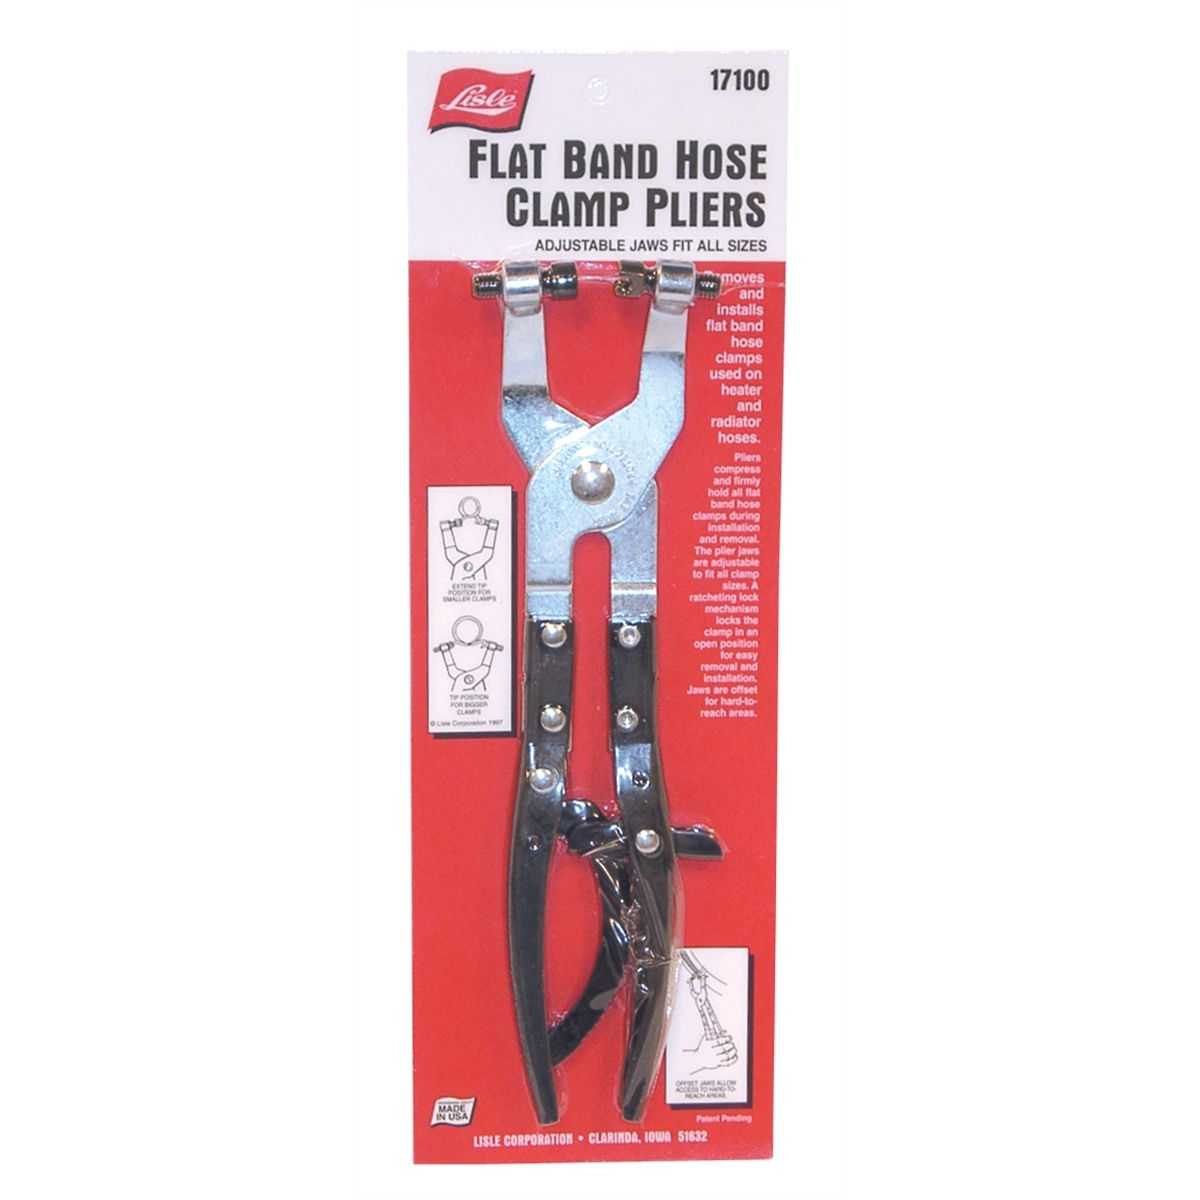 CTA Tools Clic & Clic-R Hose Clamp Pliers